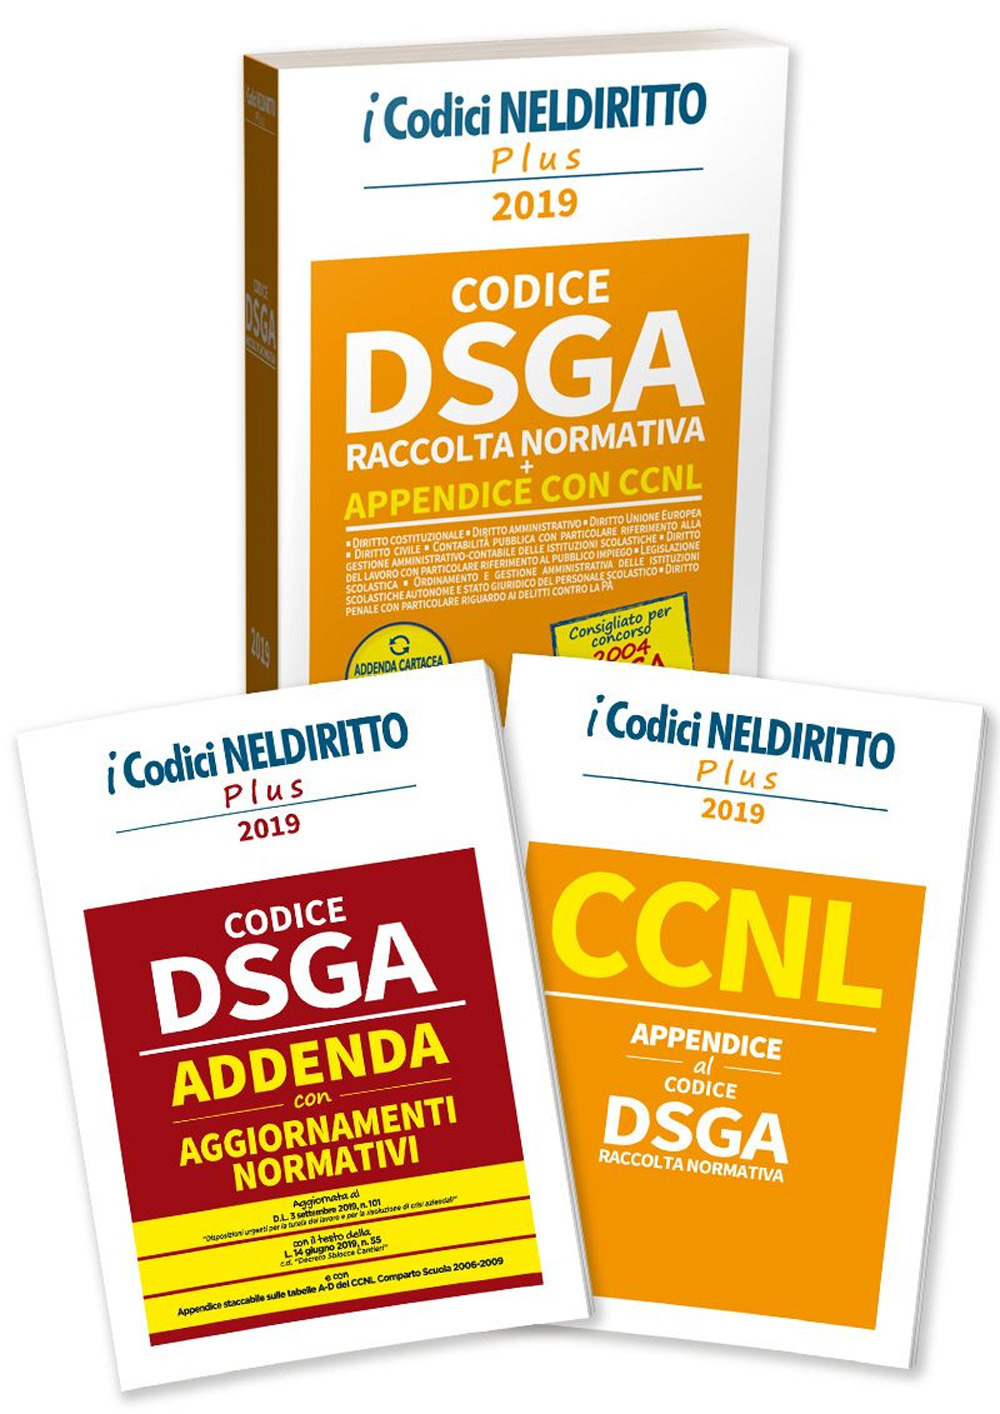 DSGA. Raccolta normativa. Concorso 2004 DSGA. Con Fascicolo: CCNL. Appendice al codice DSGA